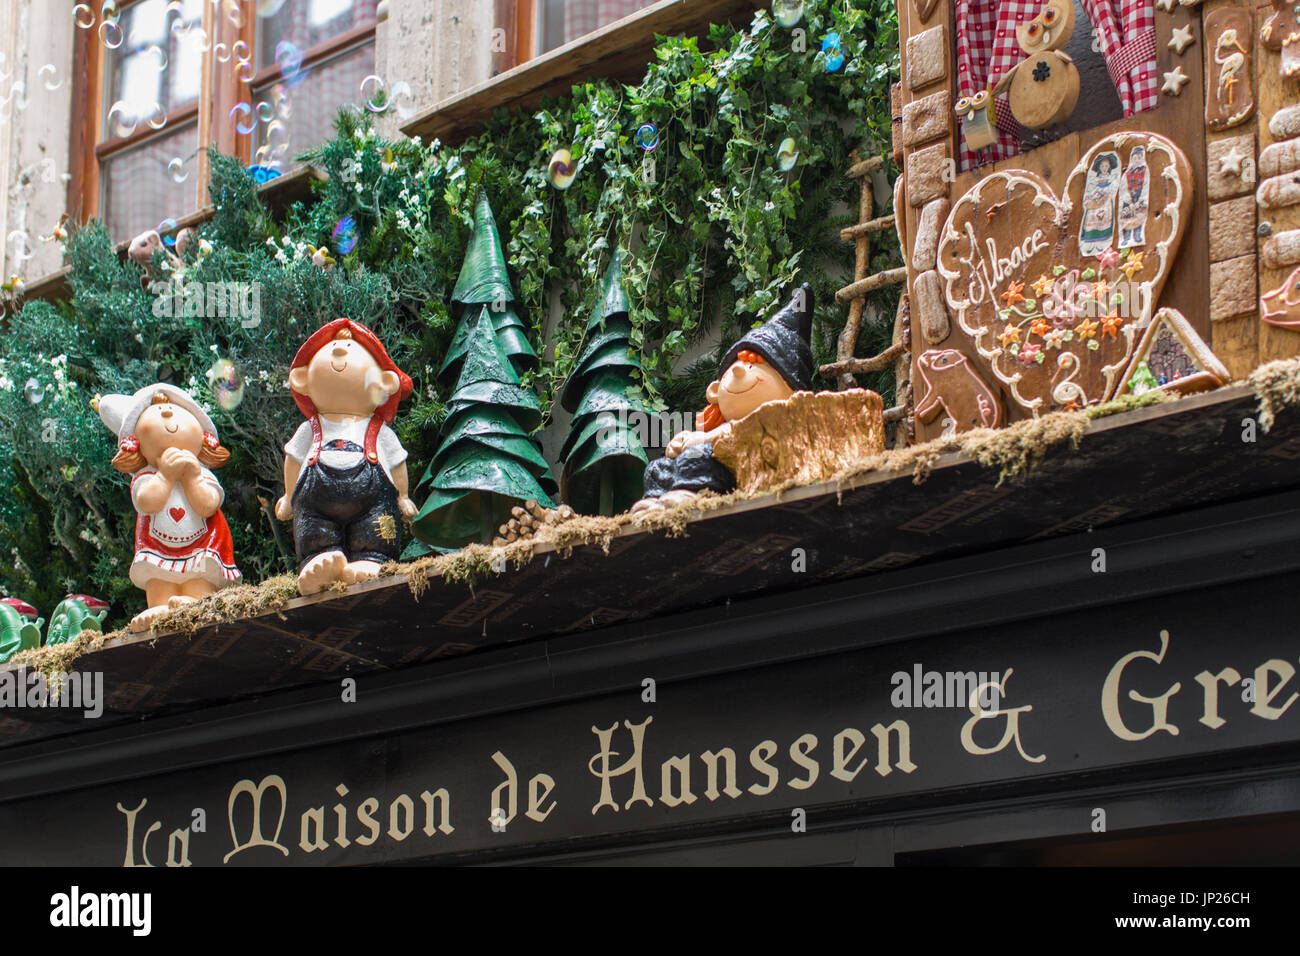 Straßburg, Elsass, Frankreich - 3. Mai 2014: Schaufenster der Geschenk-Shop La Maison de Hanssen & Gretel in Straßburg, Frankreich Stockfoto